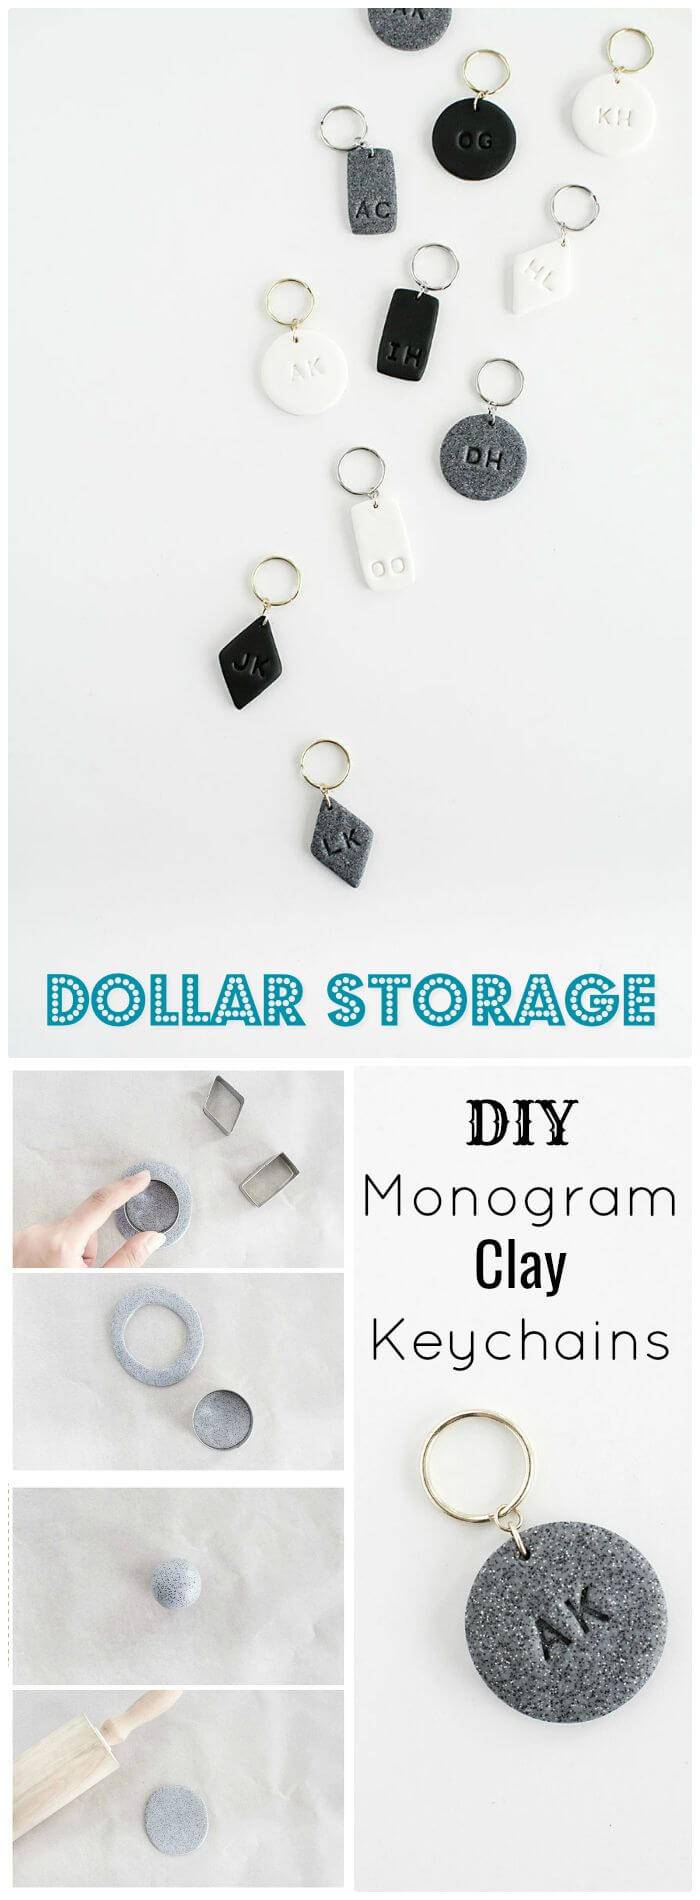 DIY Monogram Clay Keychains - Dollar Store Crafts 